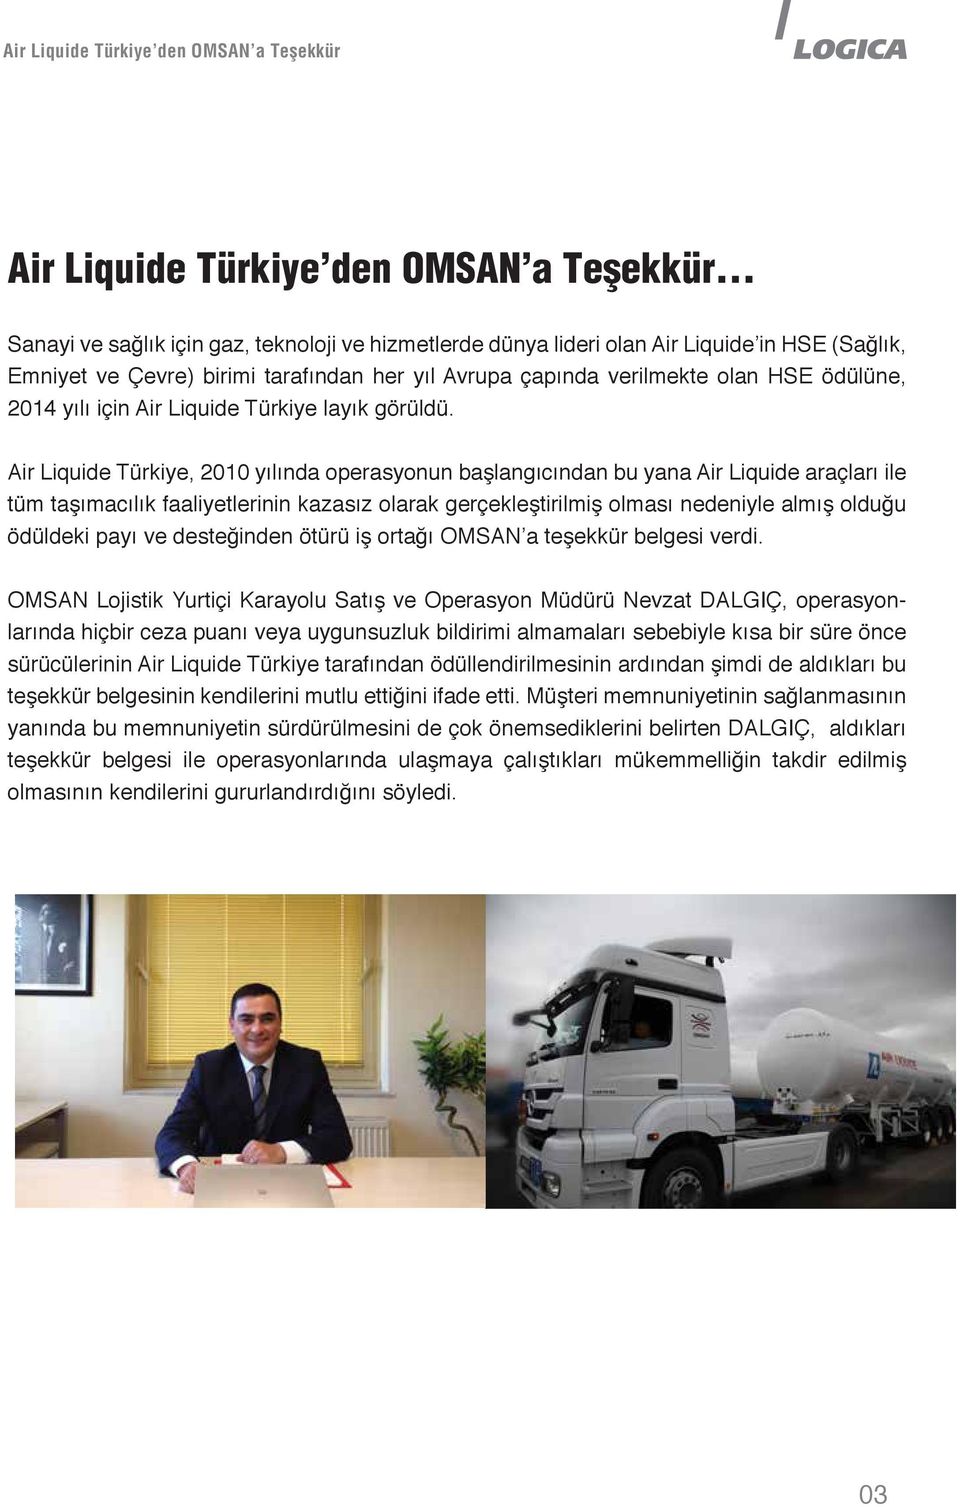 Air Liquide Türkiye, 2010 yılında operasyonun başlangıcından bu yana Air Liquide araçları ile tüm taşımacılık faaliyetlerinin kazasız olarak gerçekleştirilmiş olması nedeniyle almış olduğu ödüldeki